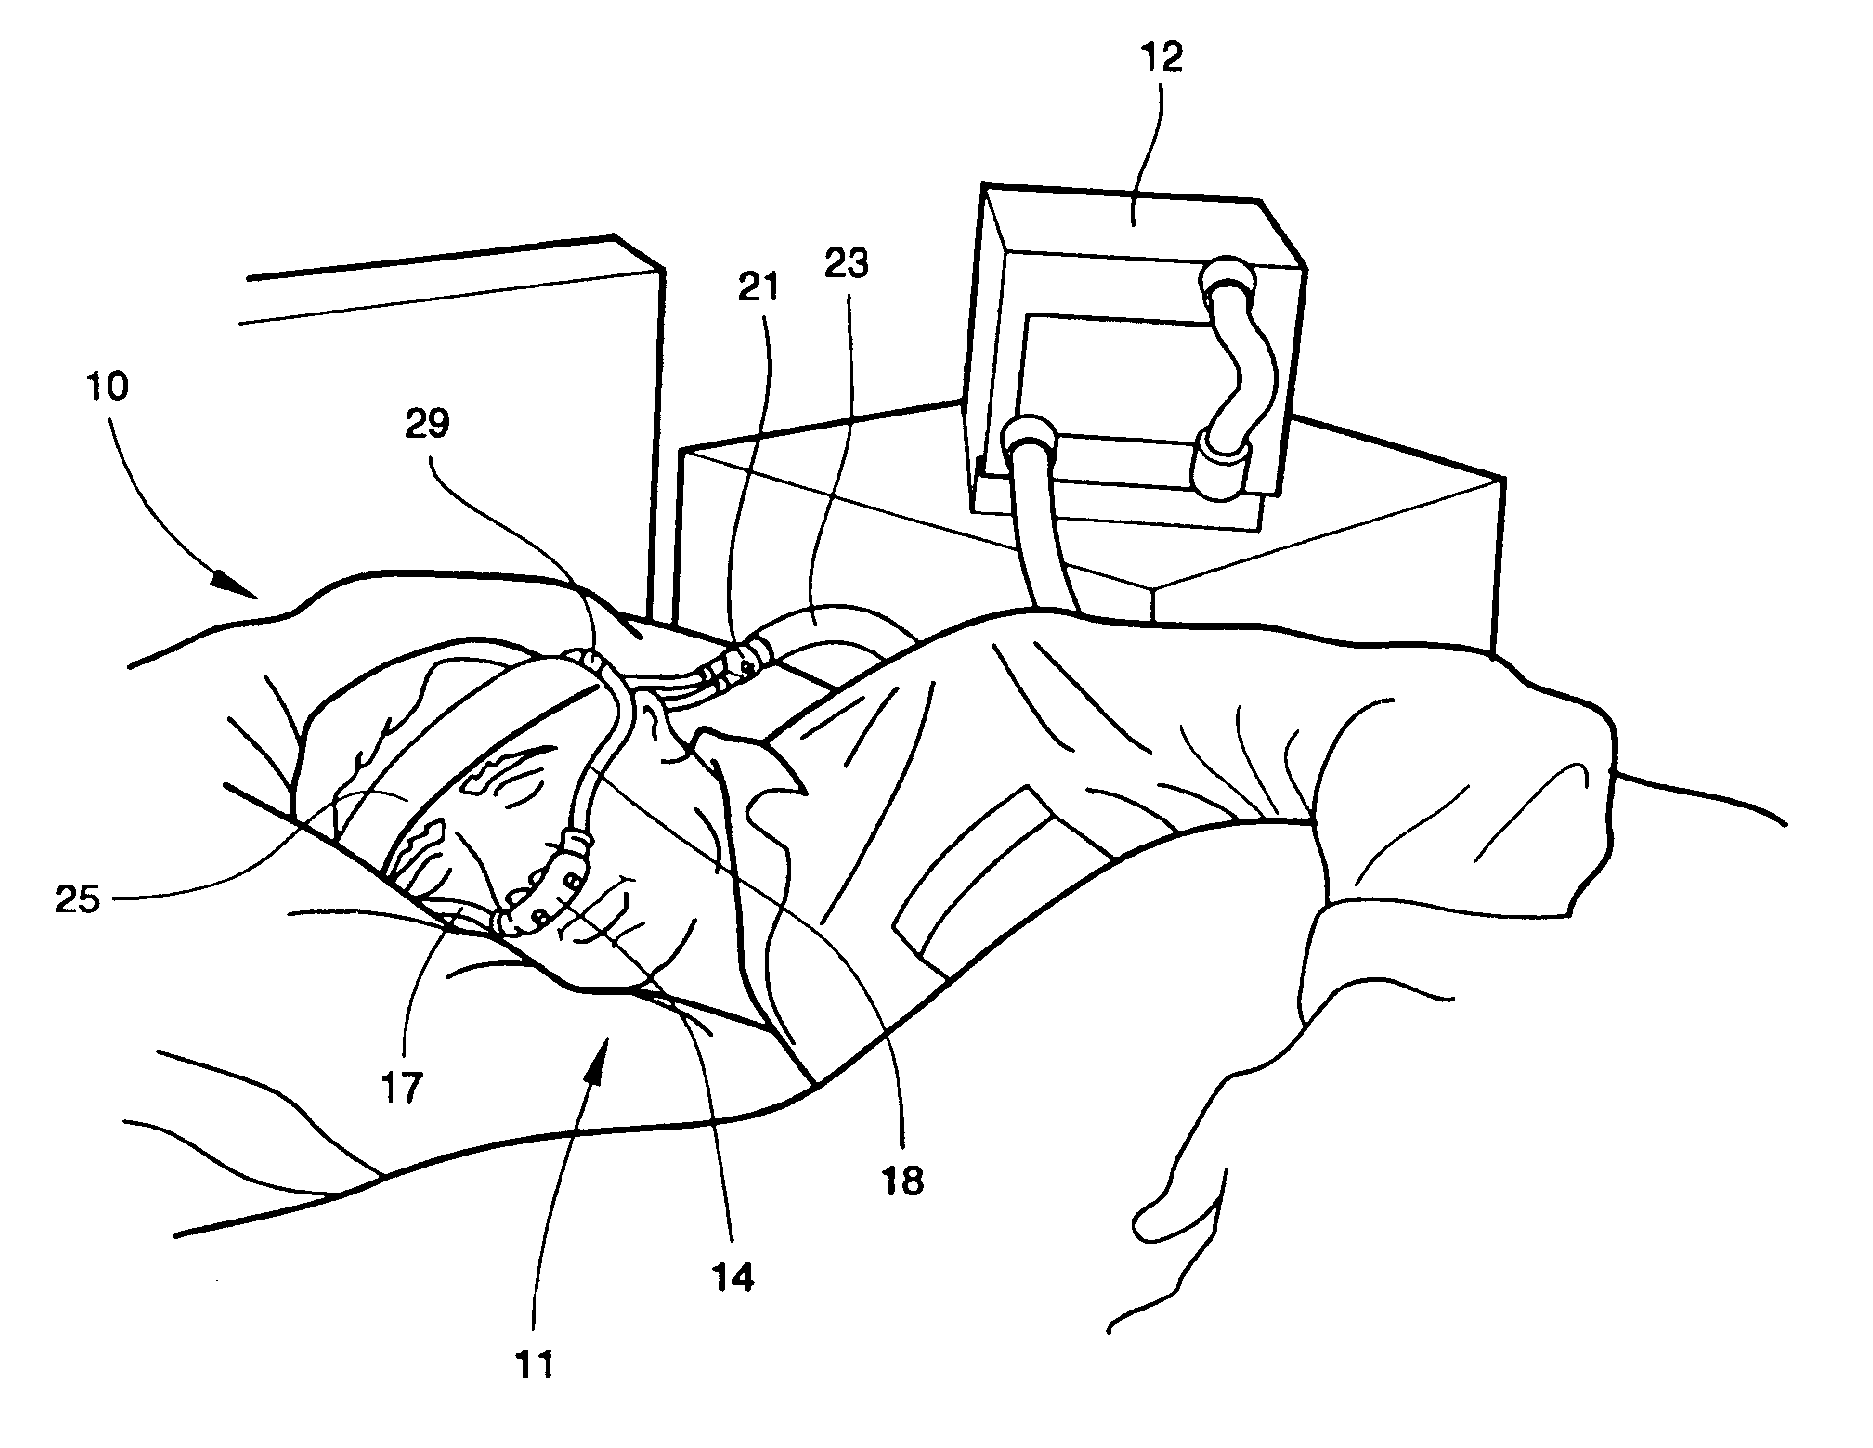 Headwear for use by a sleep apnea patient